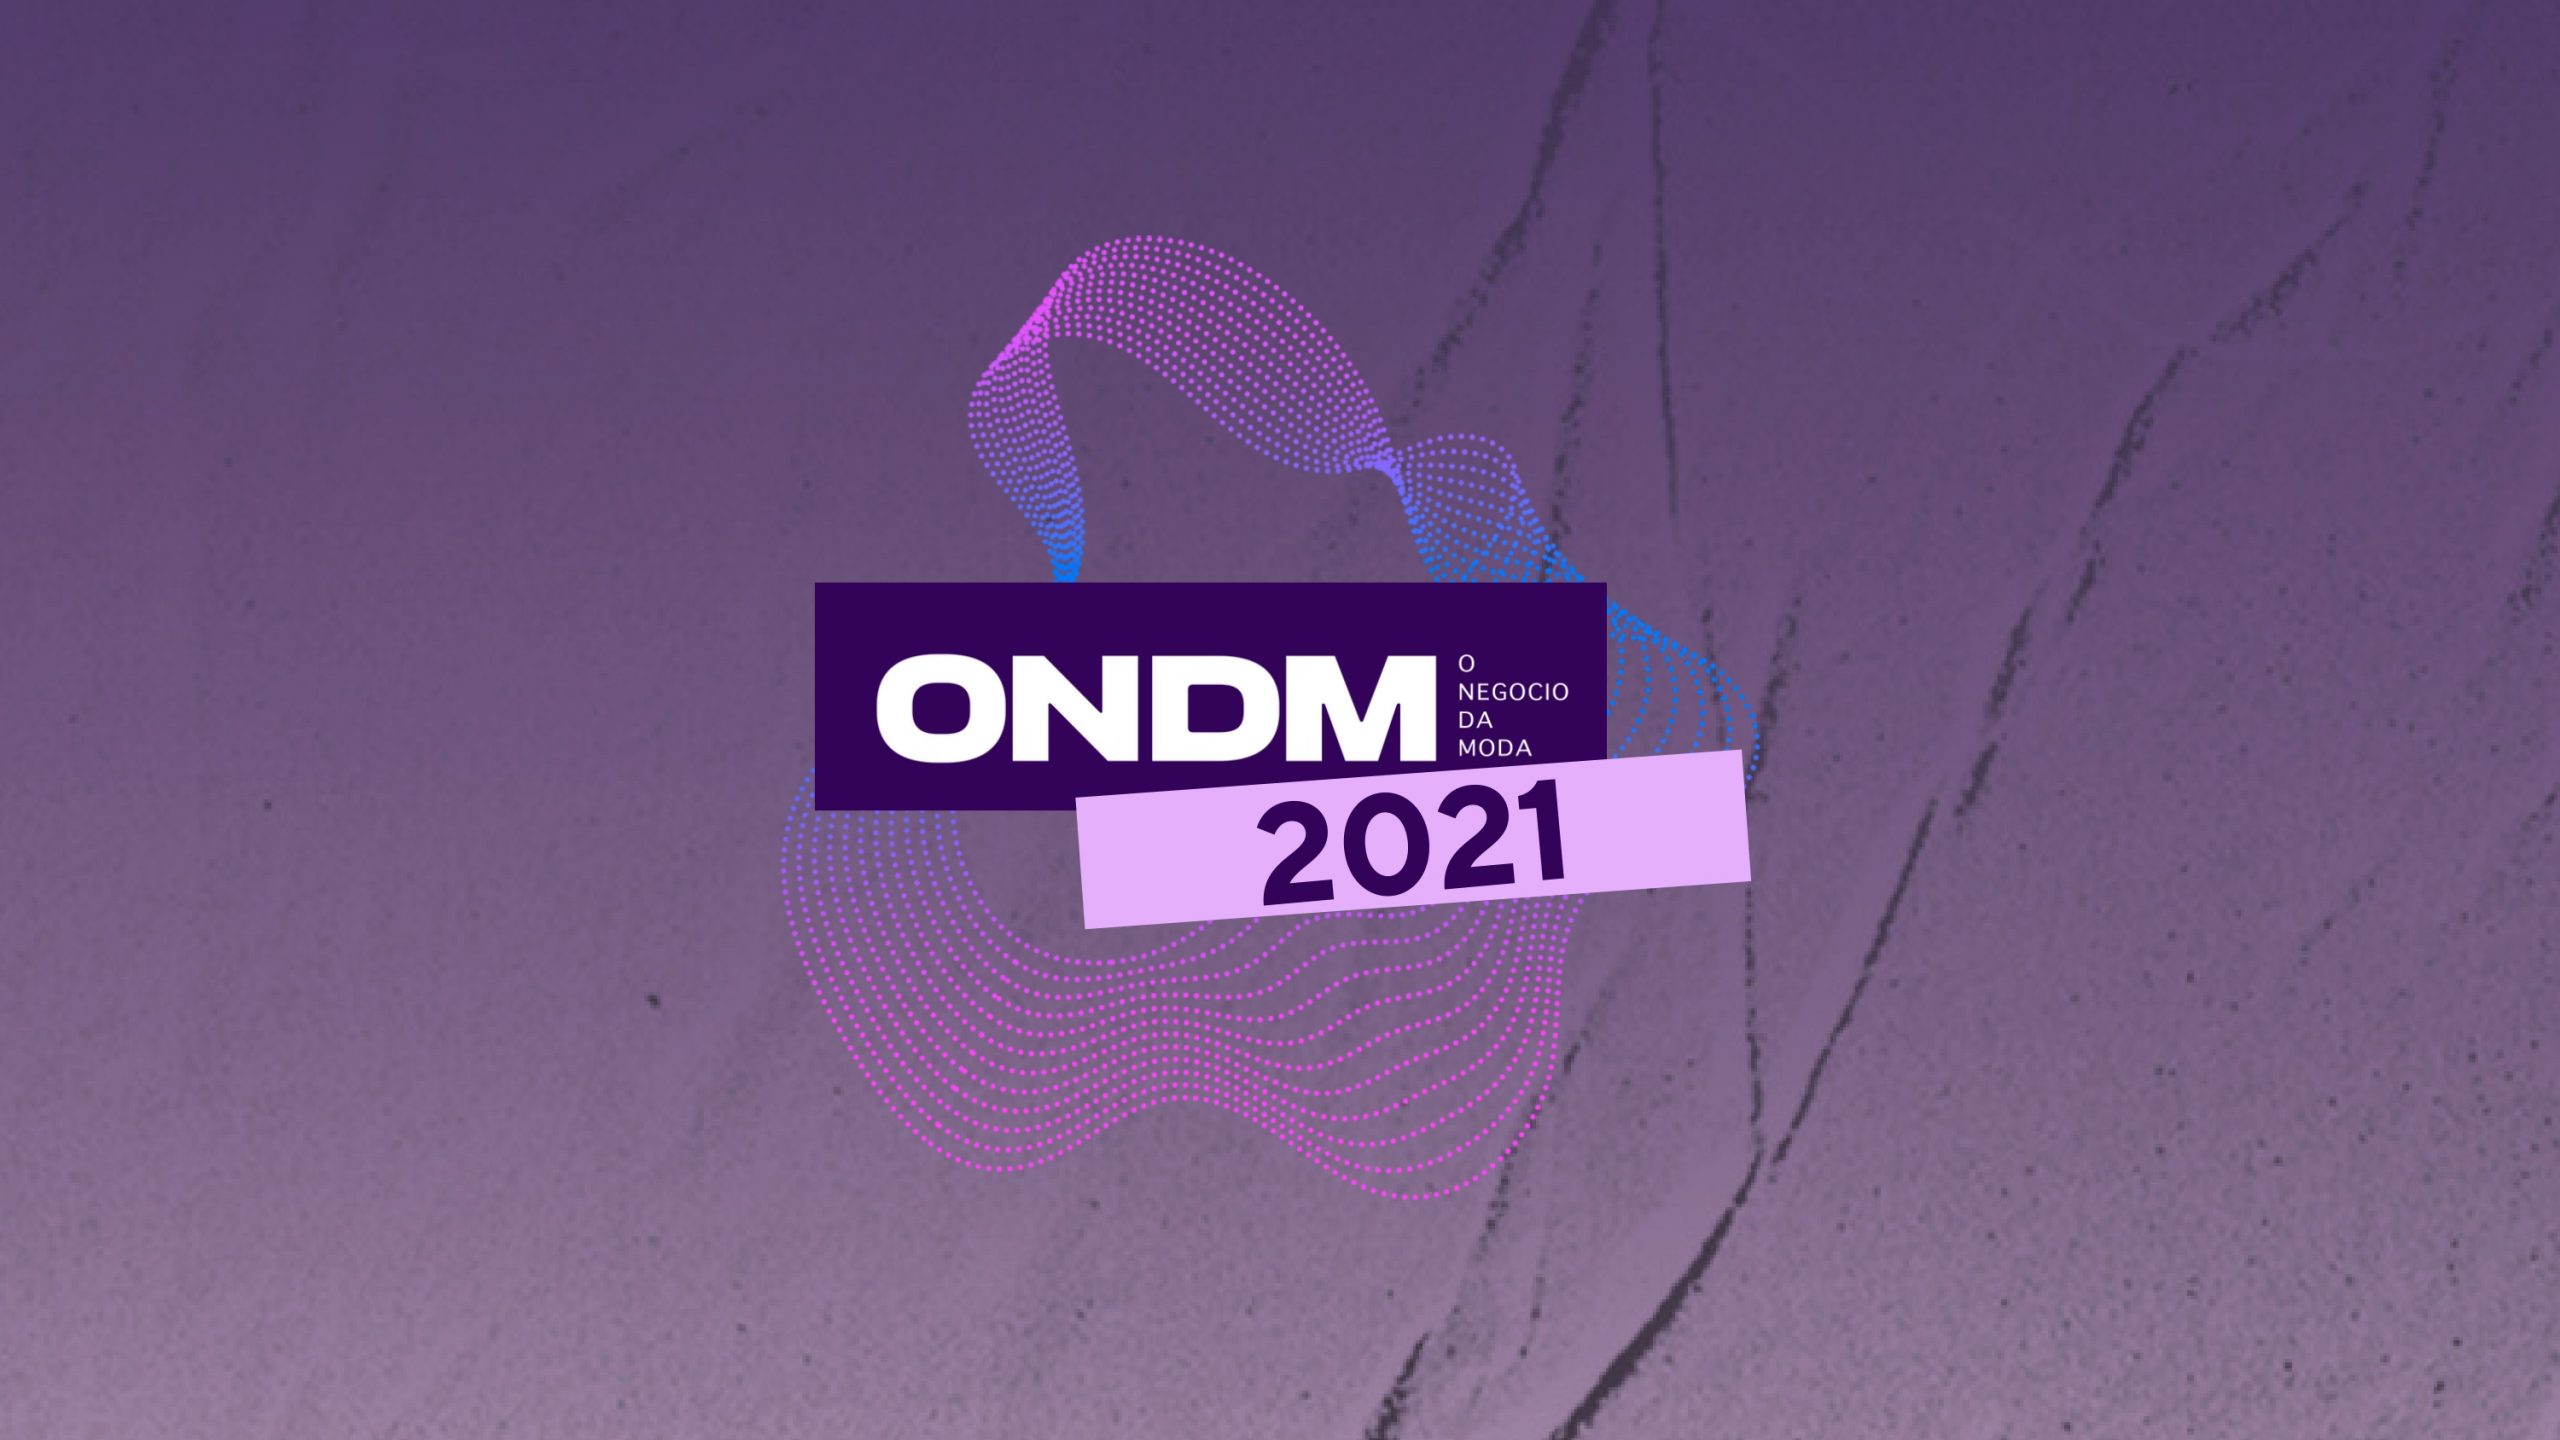 “ONDM”: O Negócio da Moda 2021